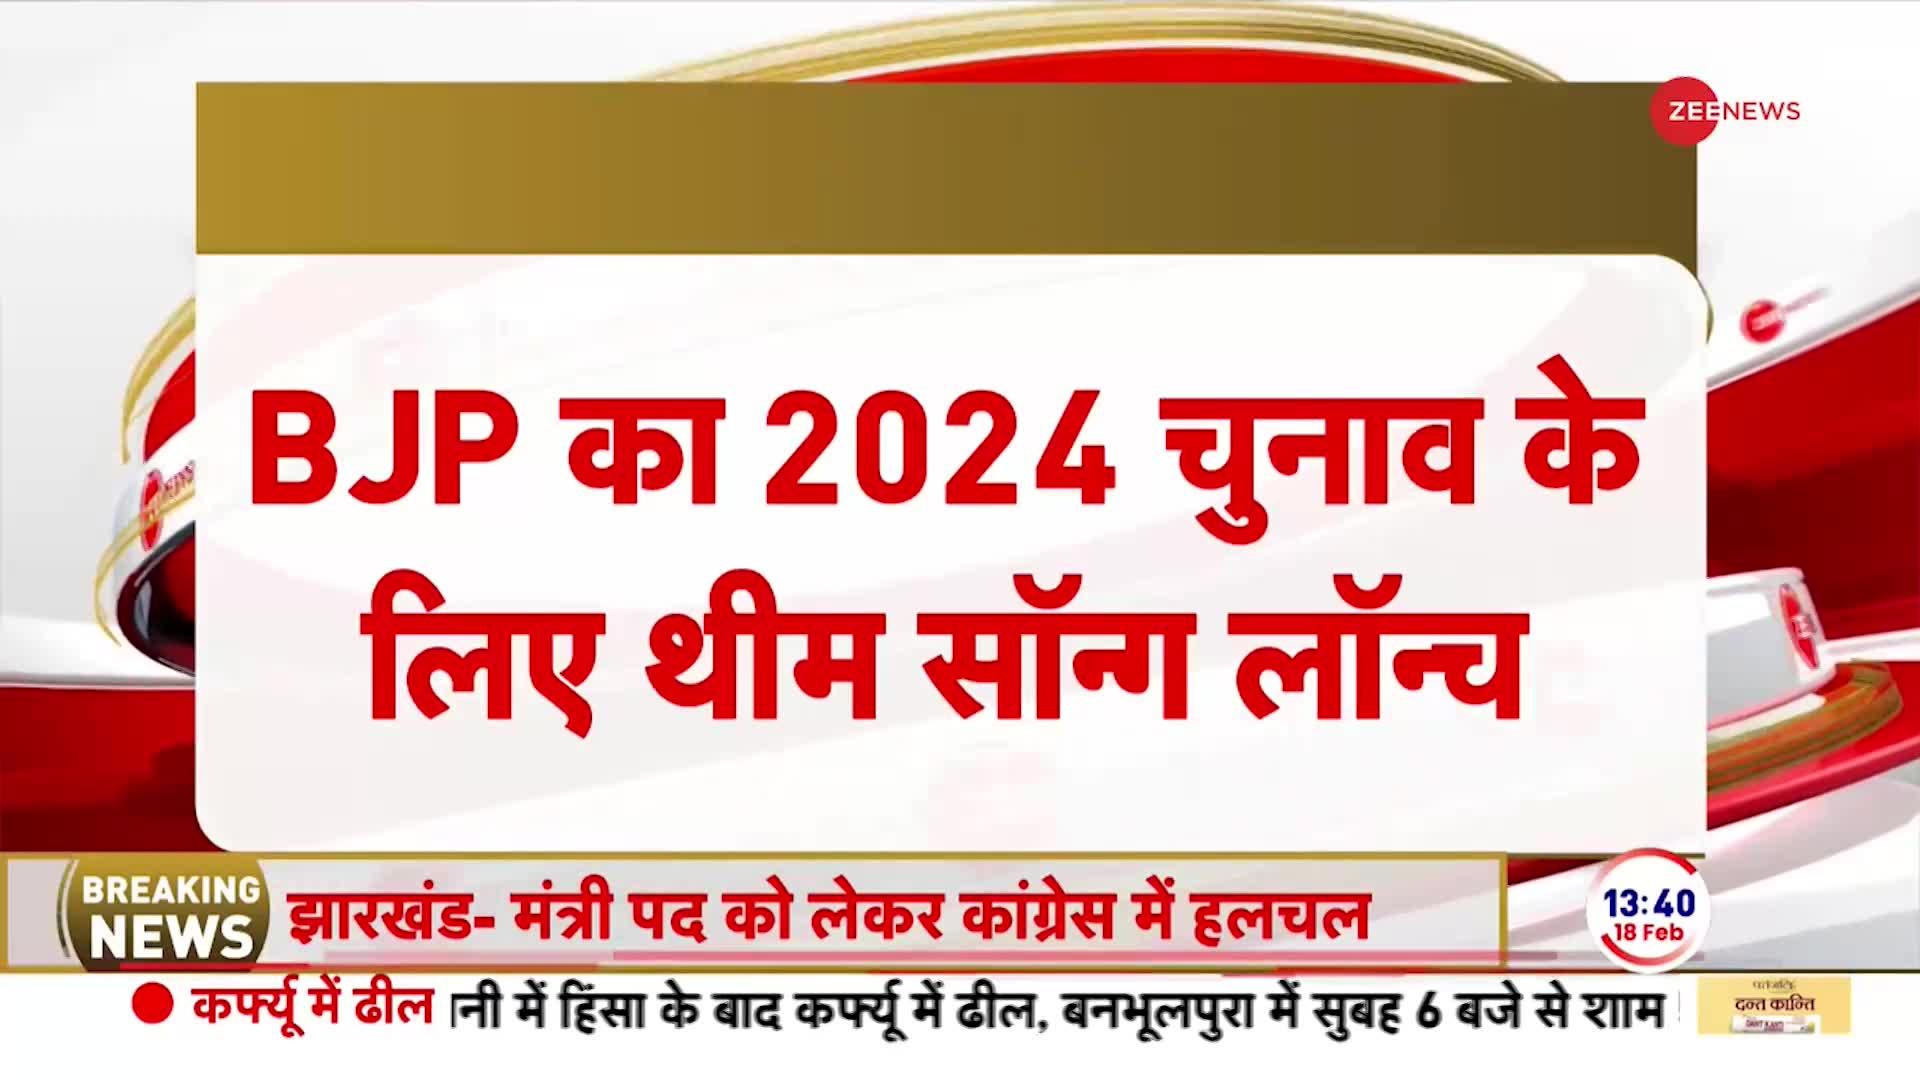 Breaking News: BJP का 2024 चुनाव के लिए थीम सॉन्ग लॉन्च